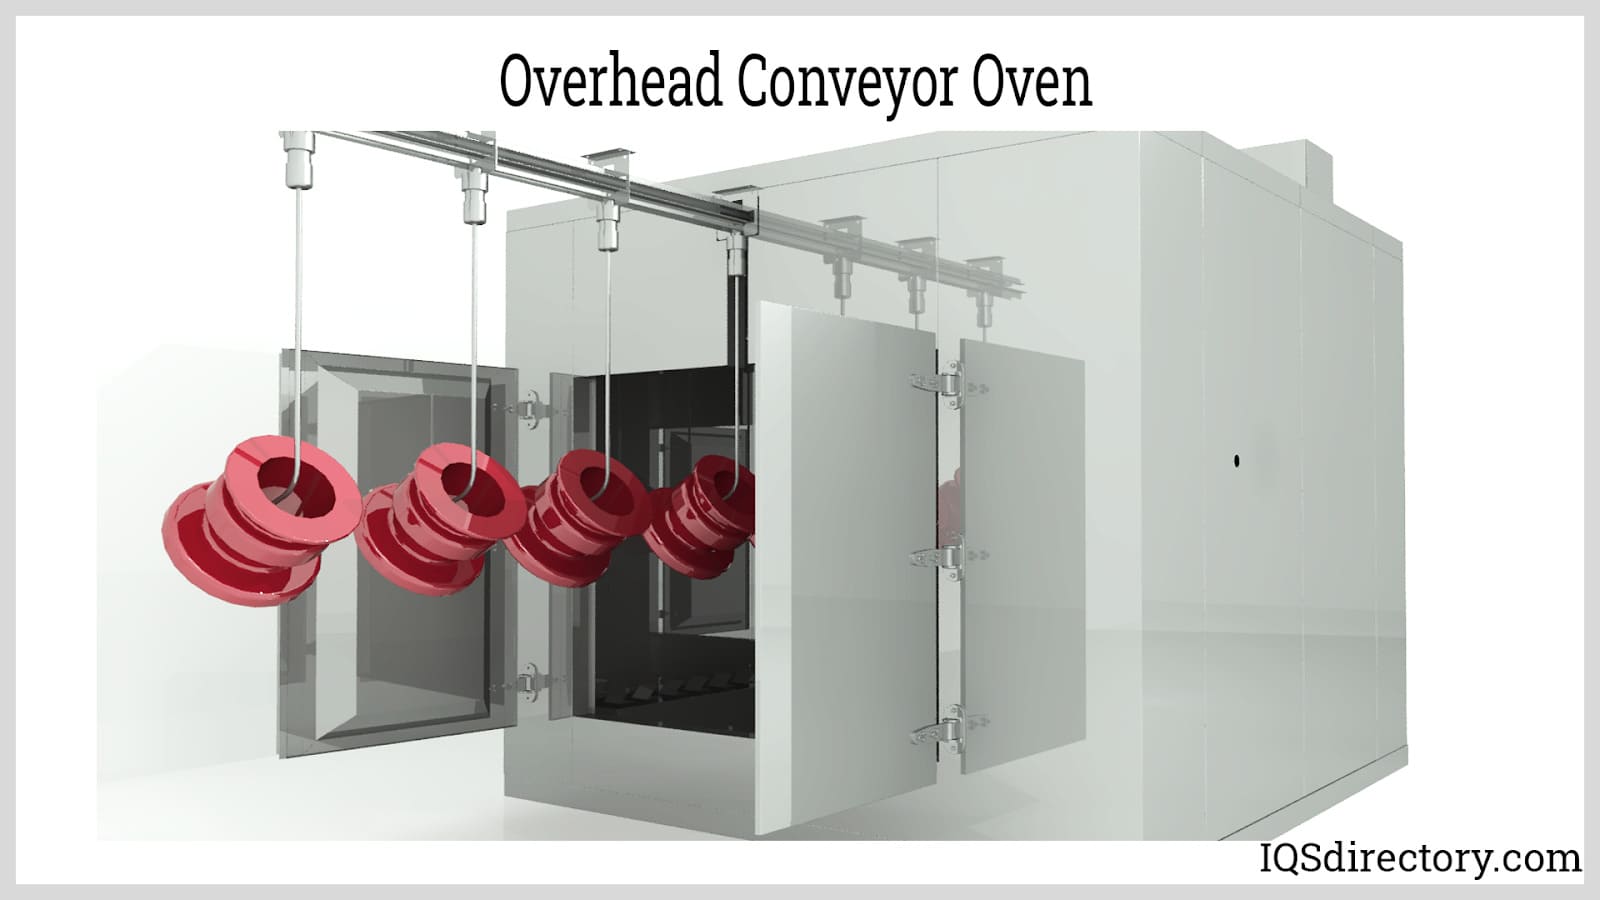 https://www.iqsdirectory.com/articles/industrial-oven/conveyor-ovens/overhead-conveyor-oven.jpg